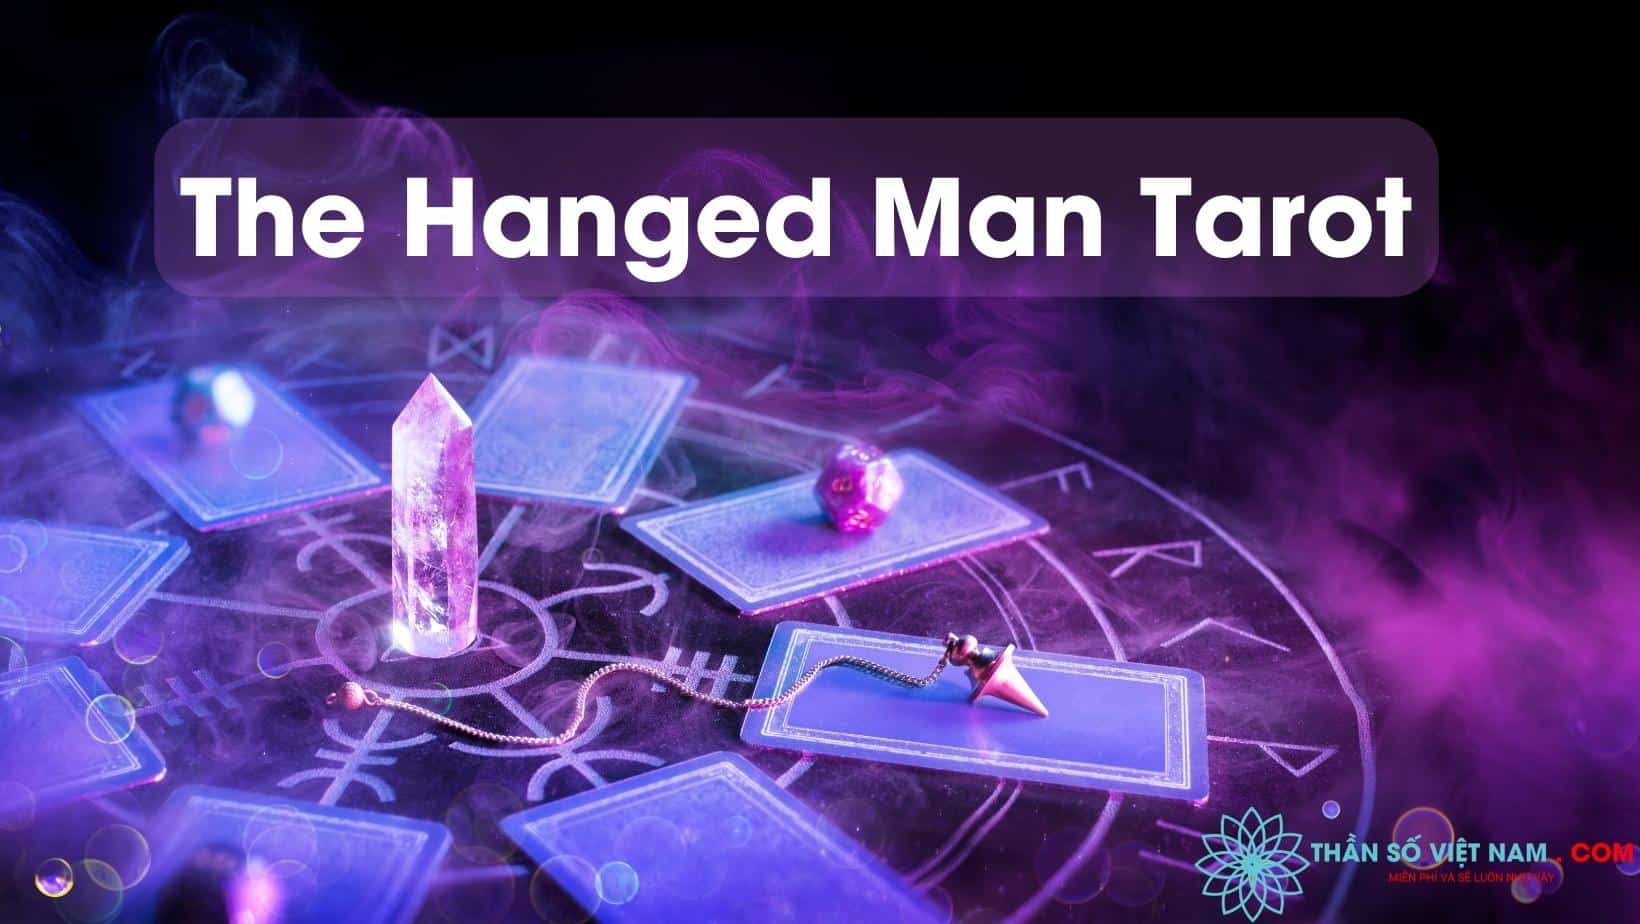 The Hanged Man Tarot - giải mã chi tiết xuôi/ngược lá bài ẩn